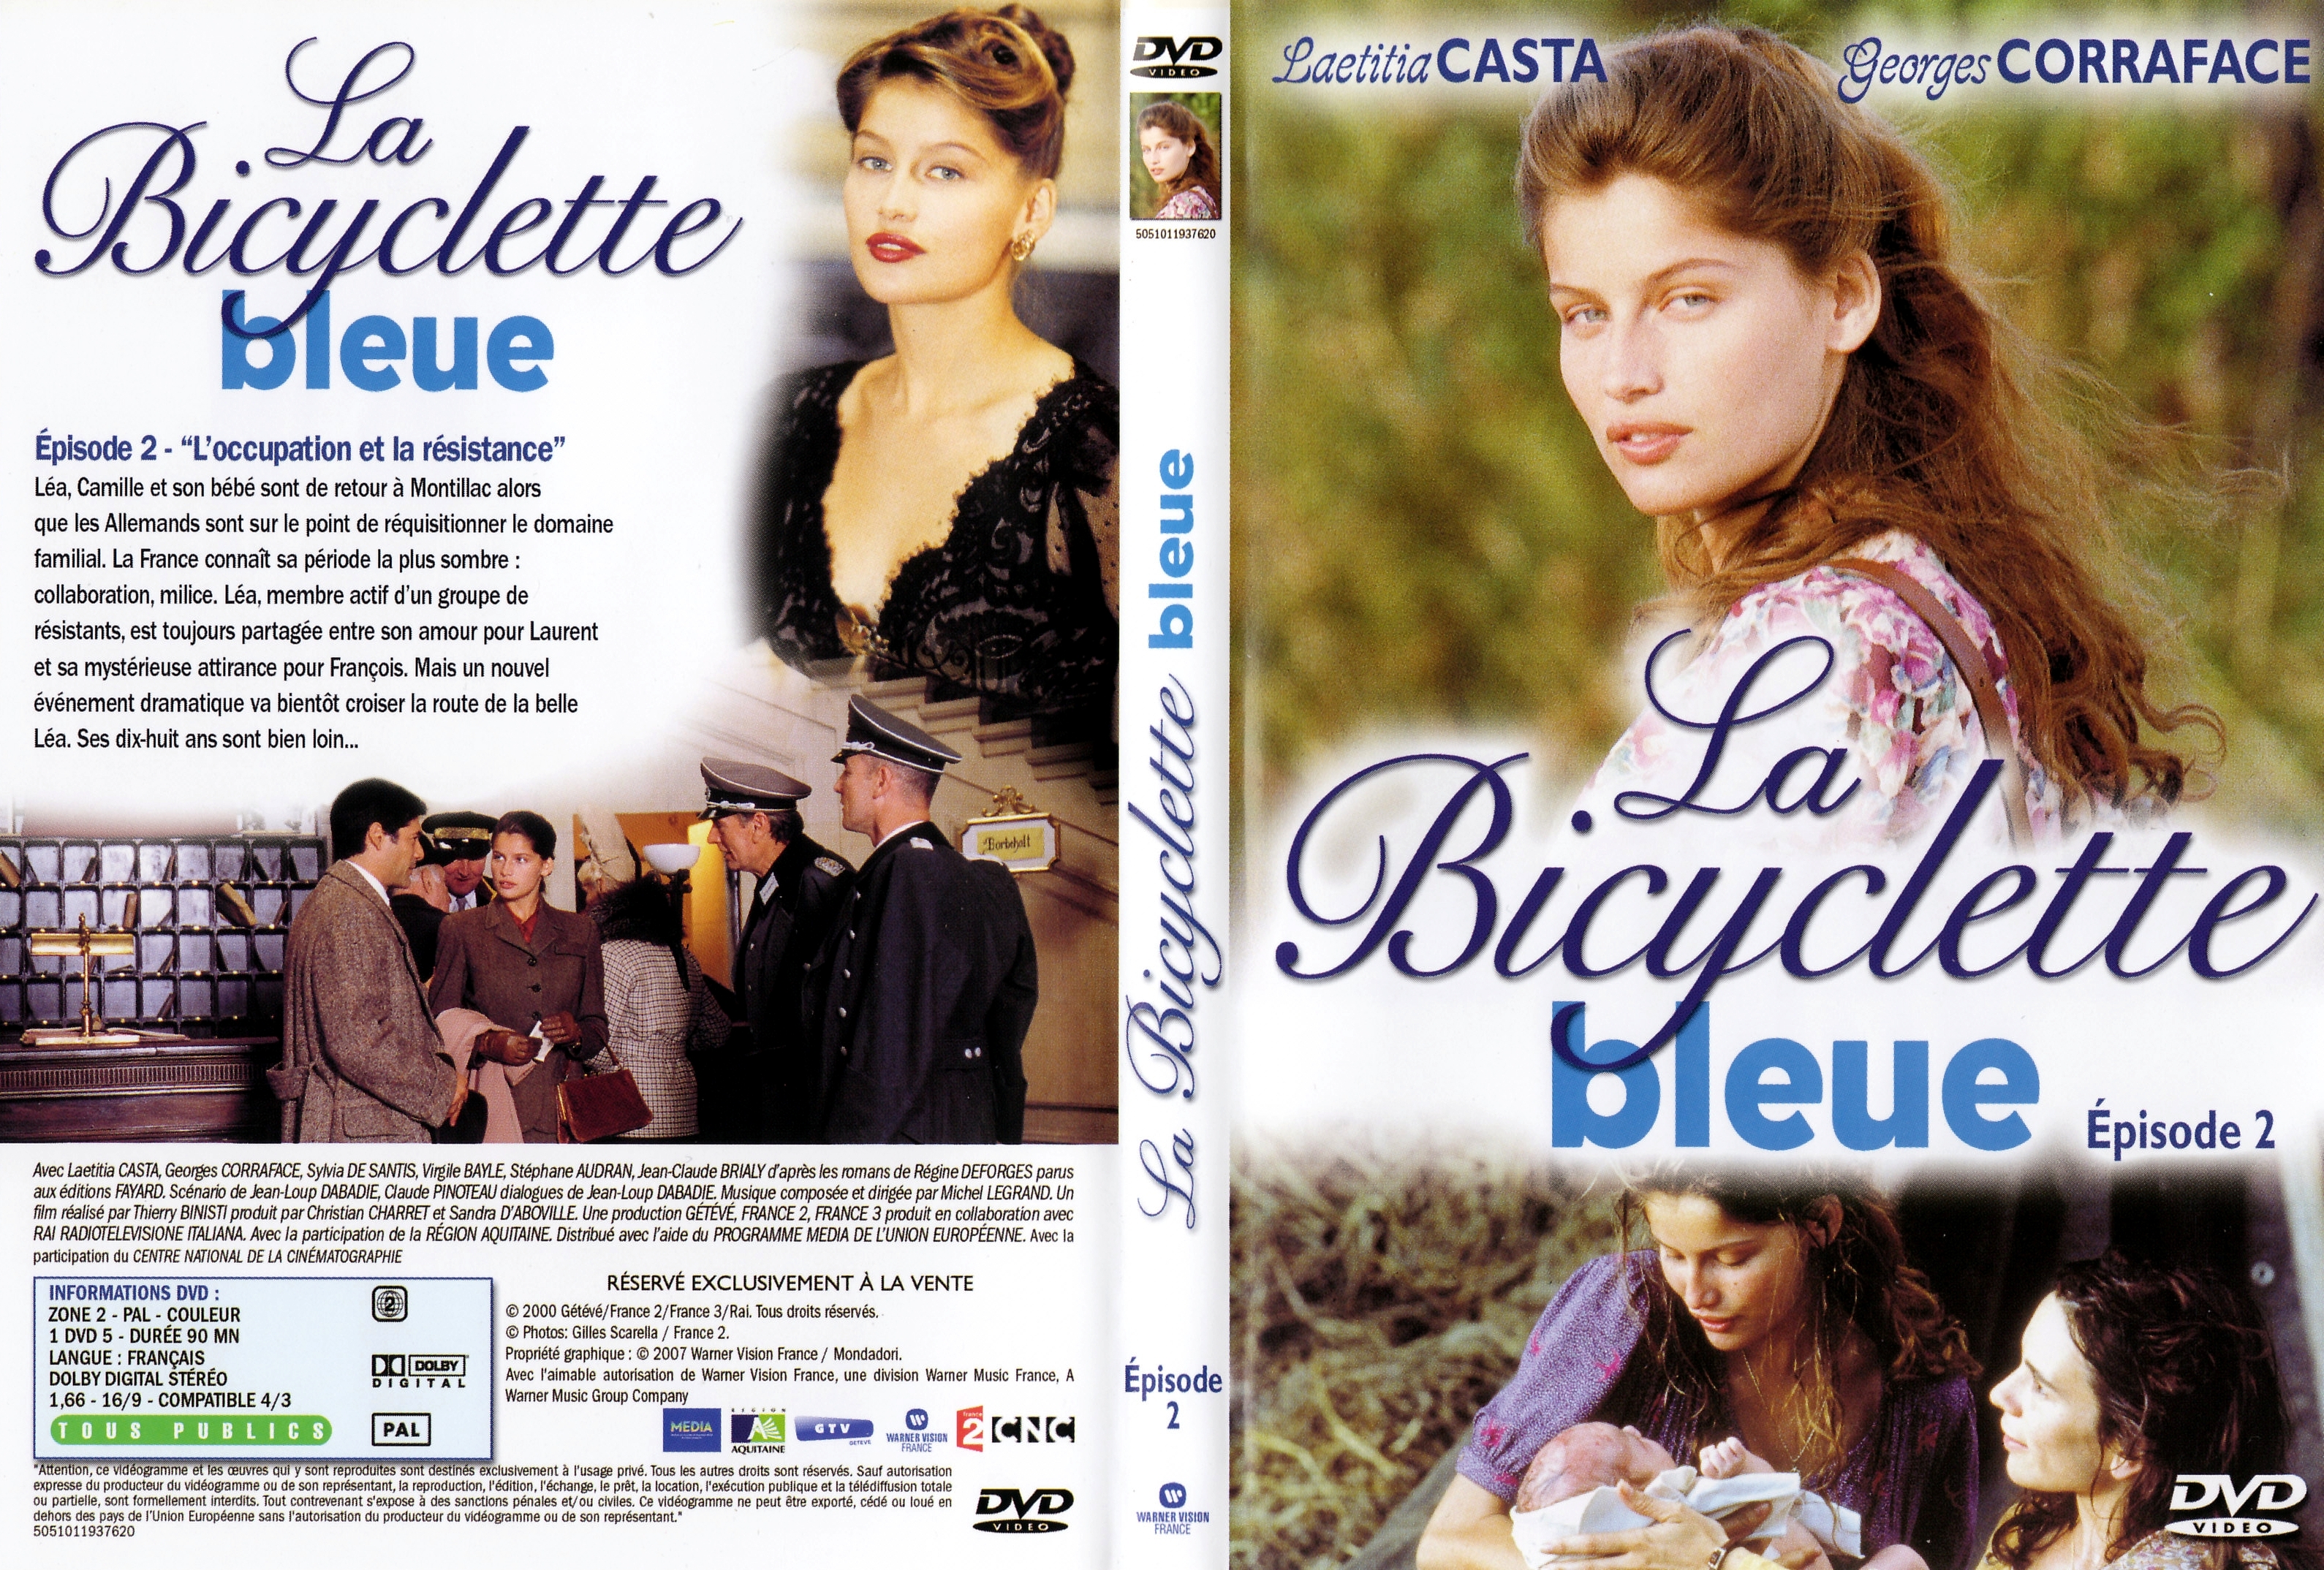 Jaquette DVD La bicyclette bleue Episode 2